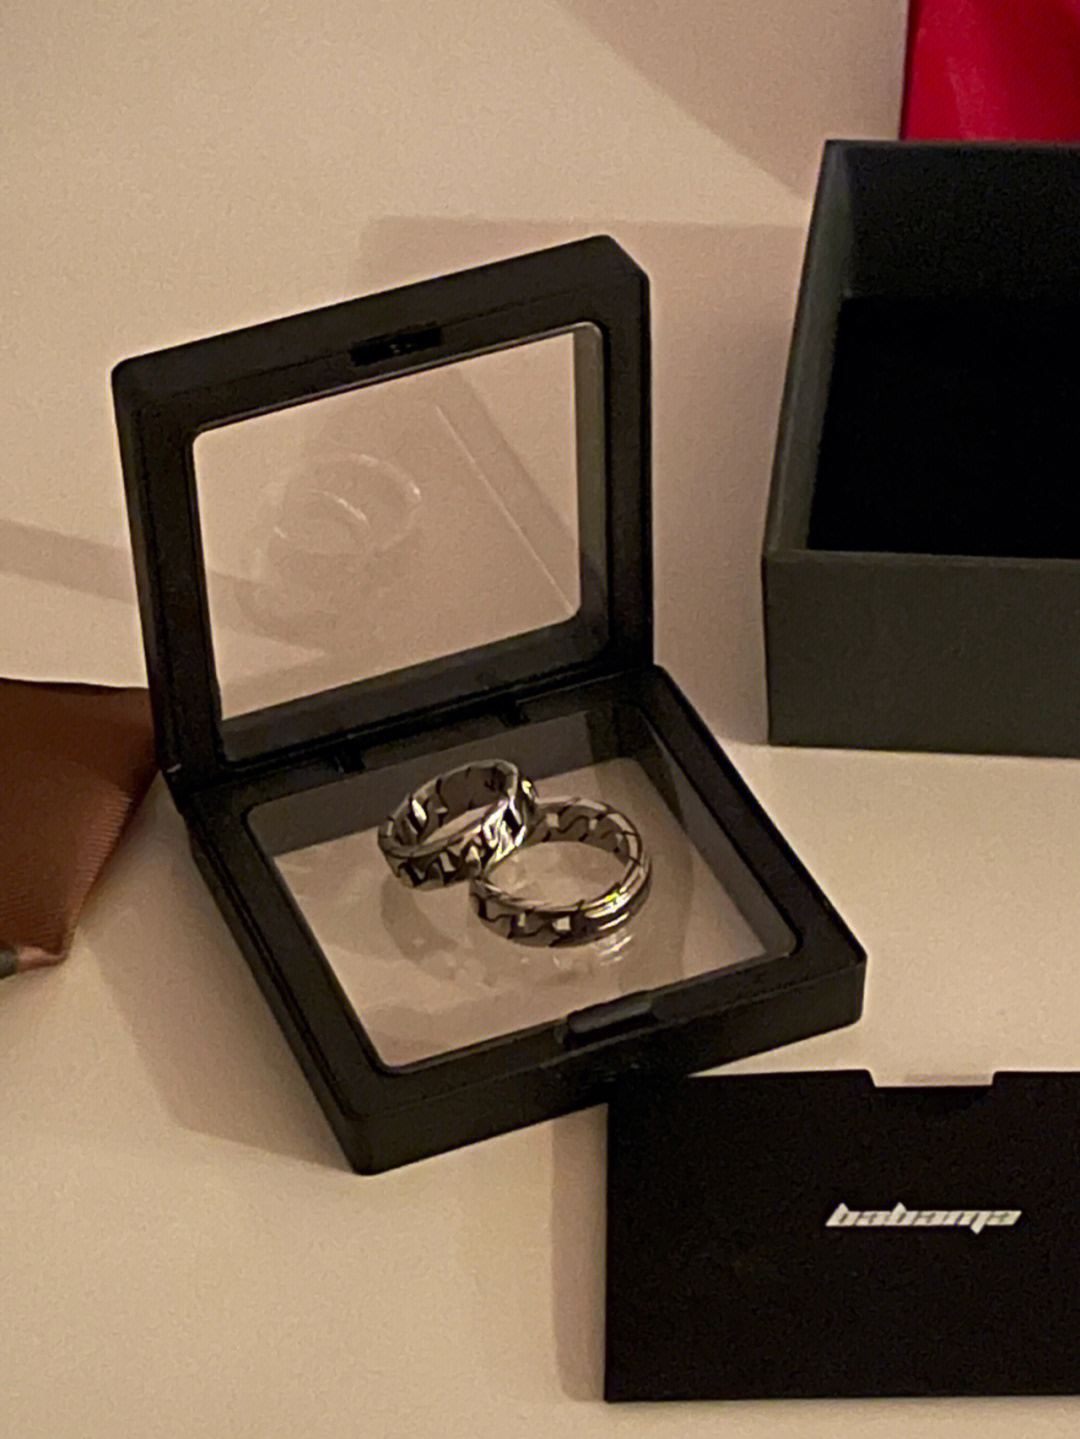 嘻嘻 谢谢babama 的礼物戒指是很酷的链条设计!